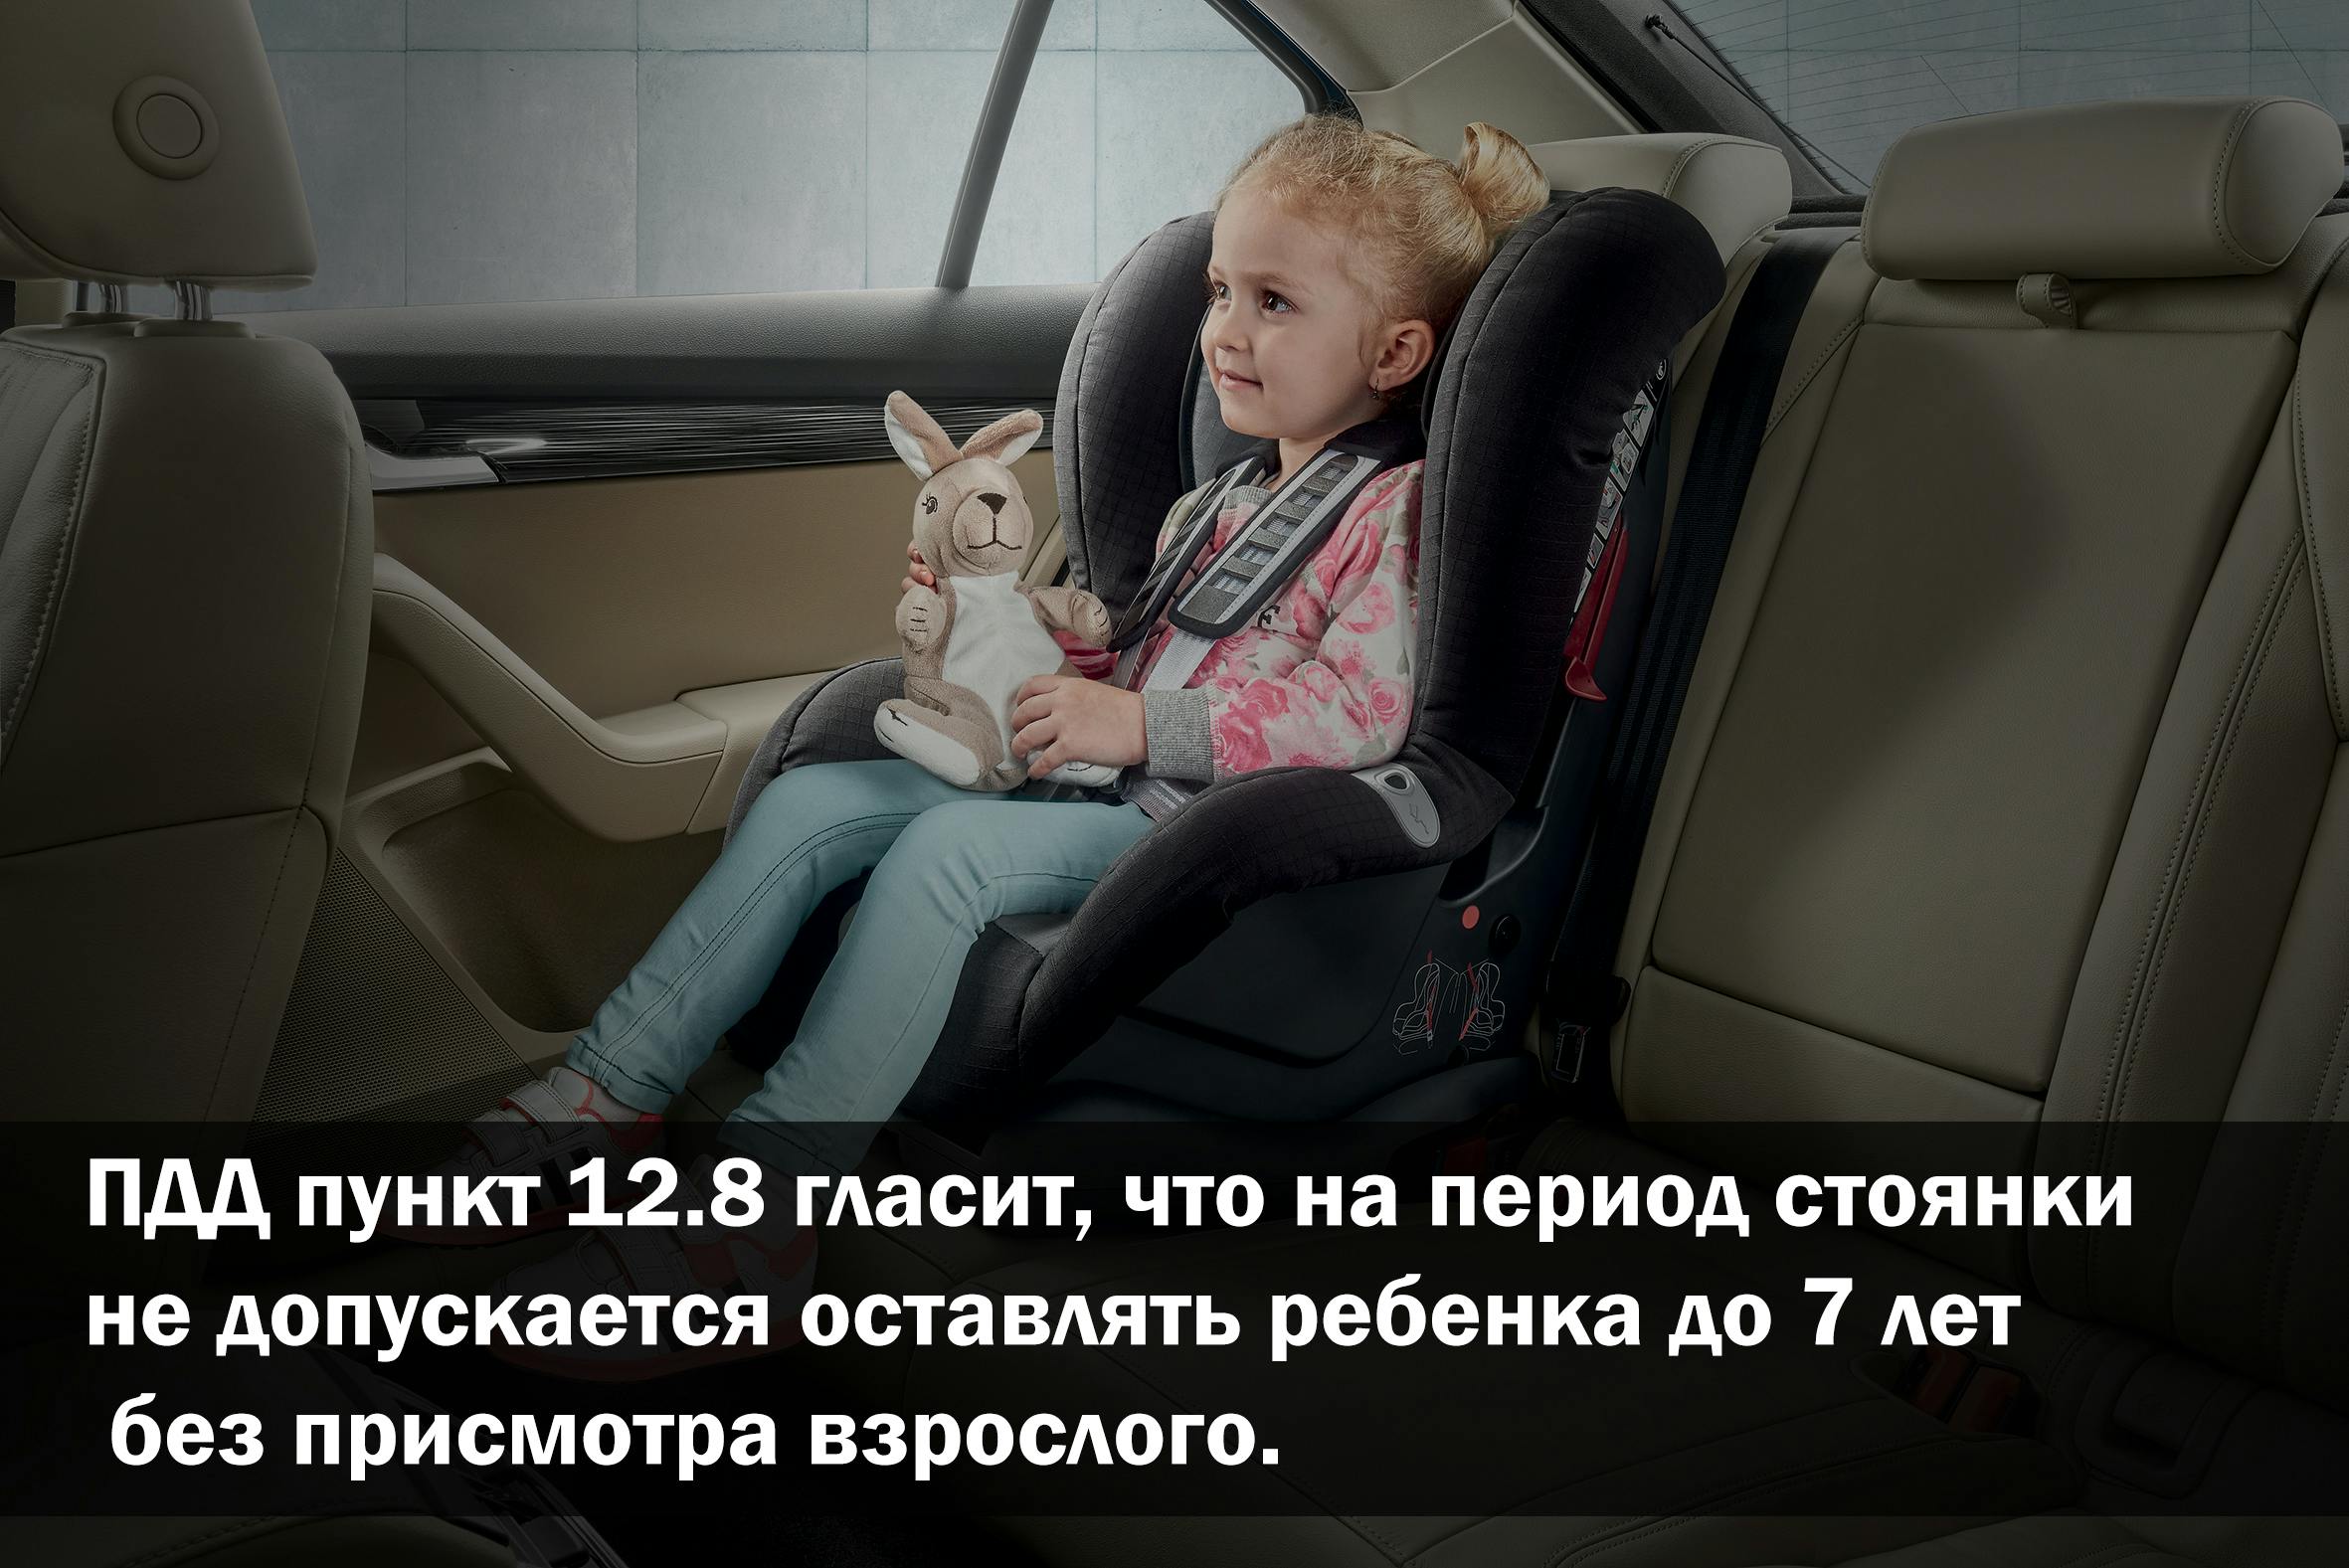 Оставить ребенка в автомобиле на период стоянки